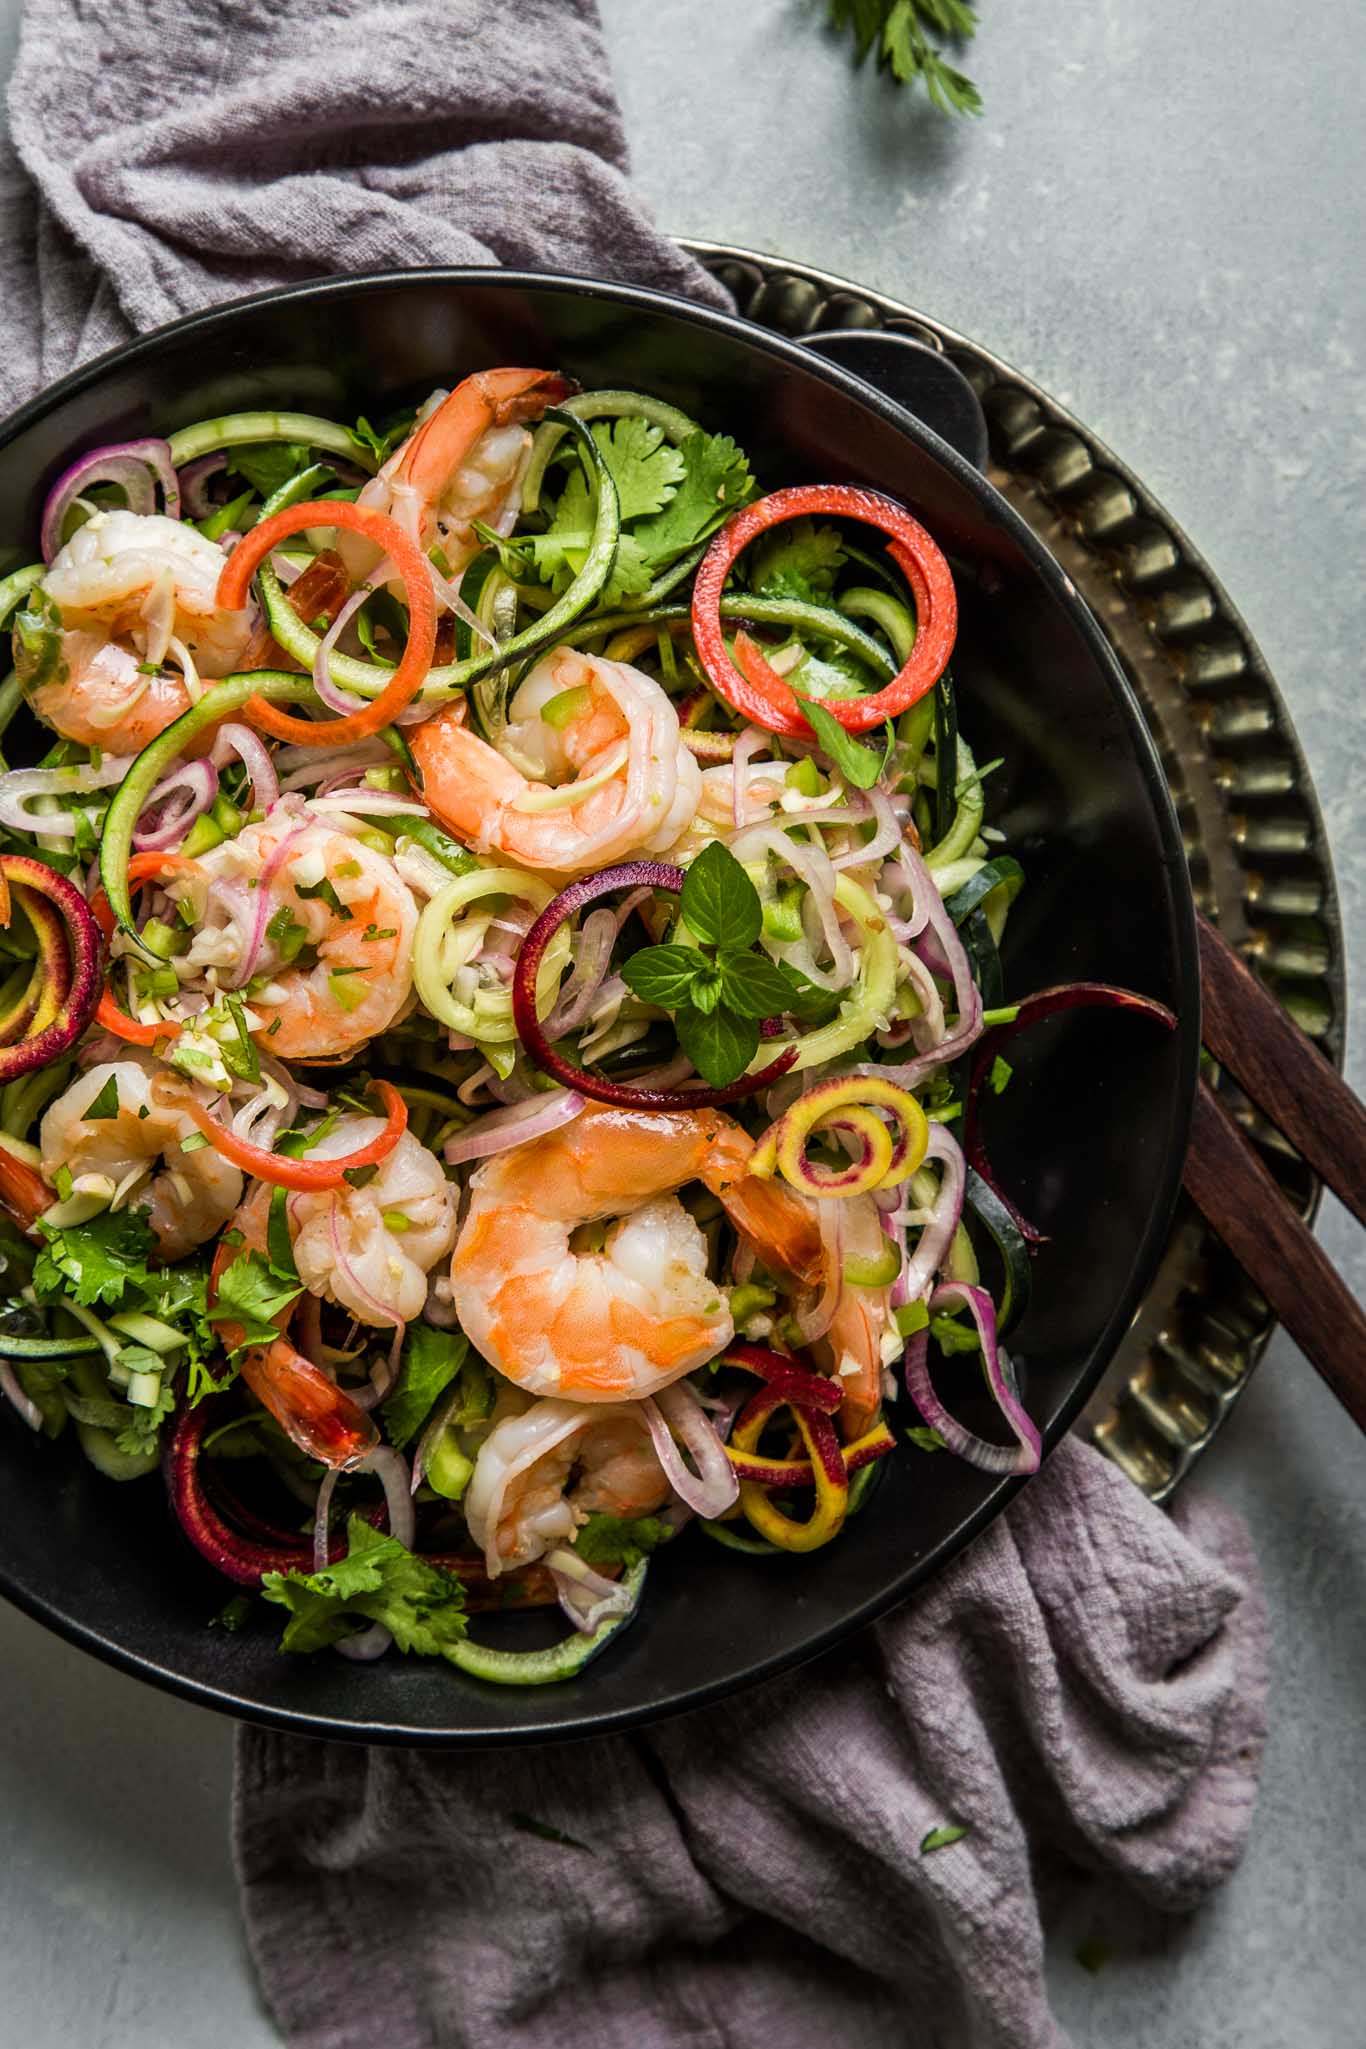 Thai shrimp salad served in a black dish